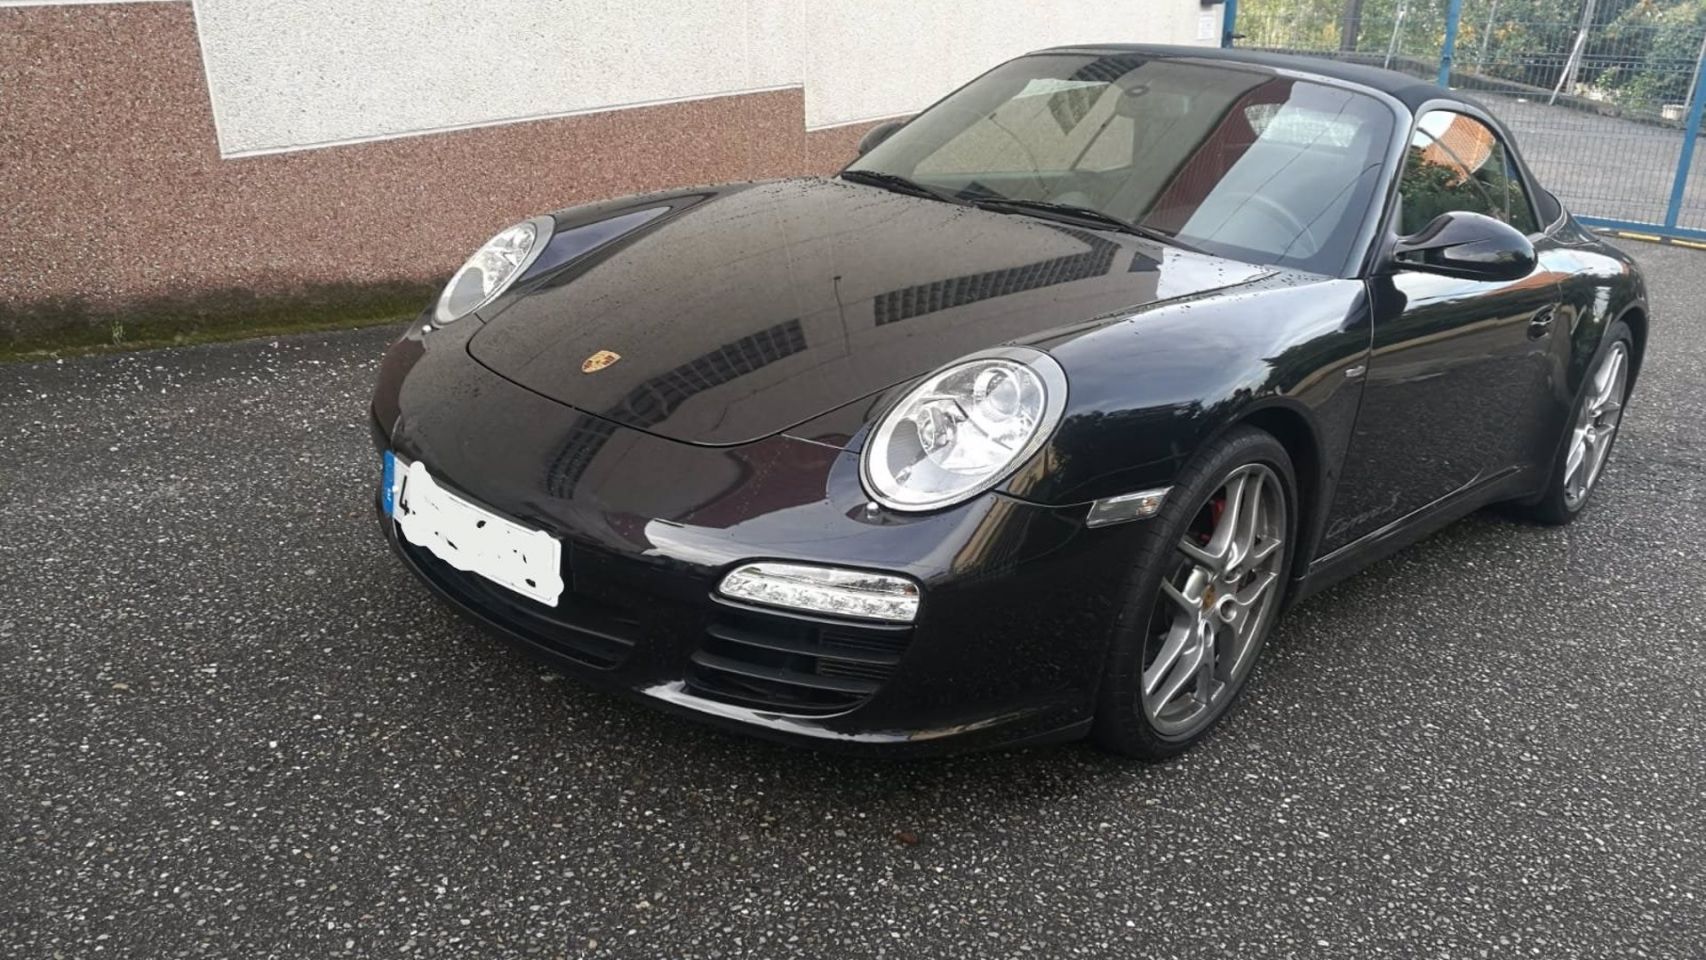 Vehículo Porsche Carrera localizado en una vial de Vigo.